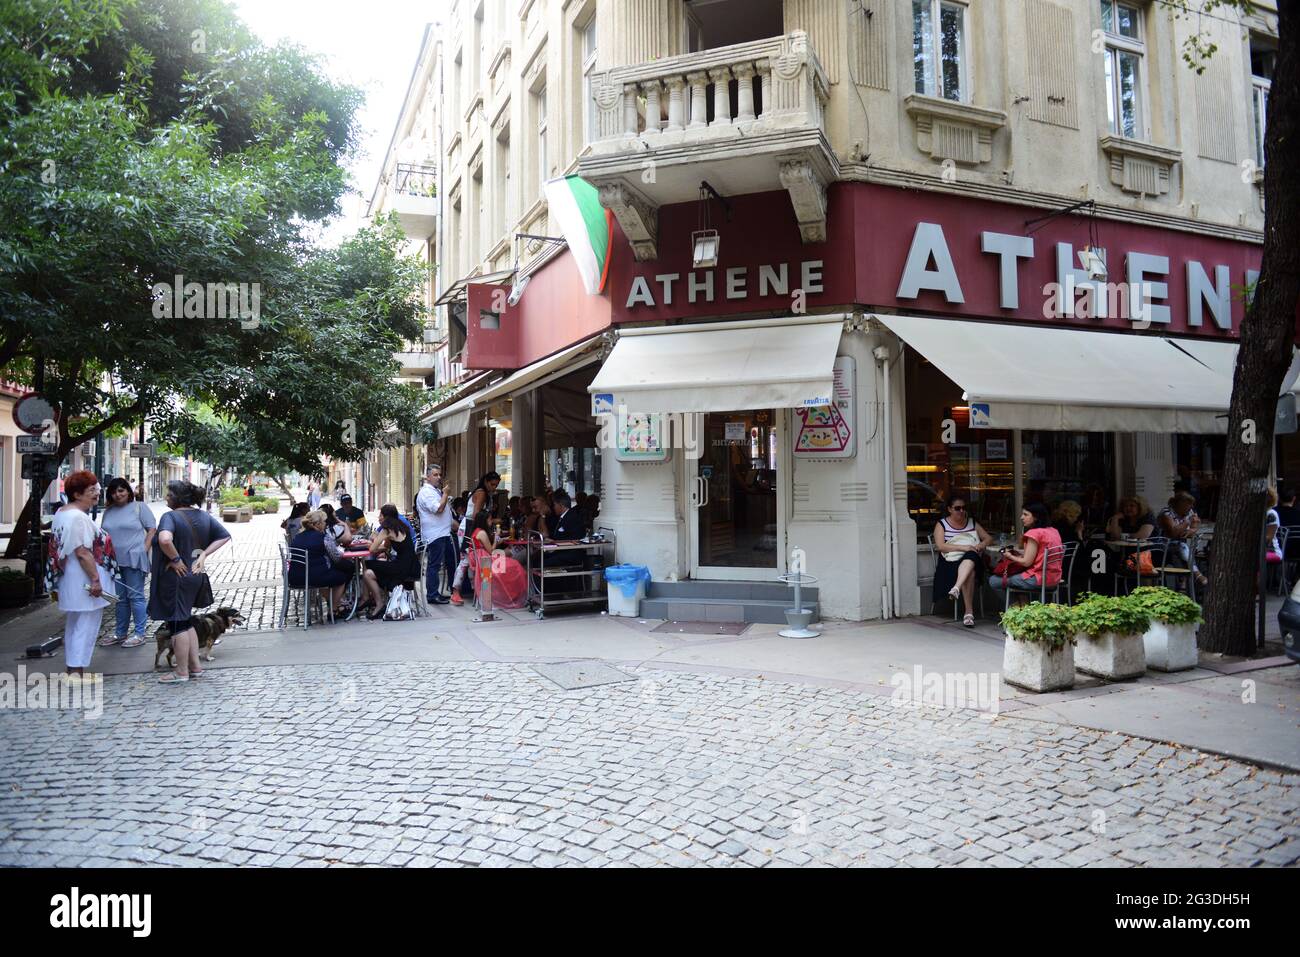 Athena patisera cafe in Sofia, Bulgaria. Stock Photo